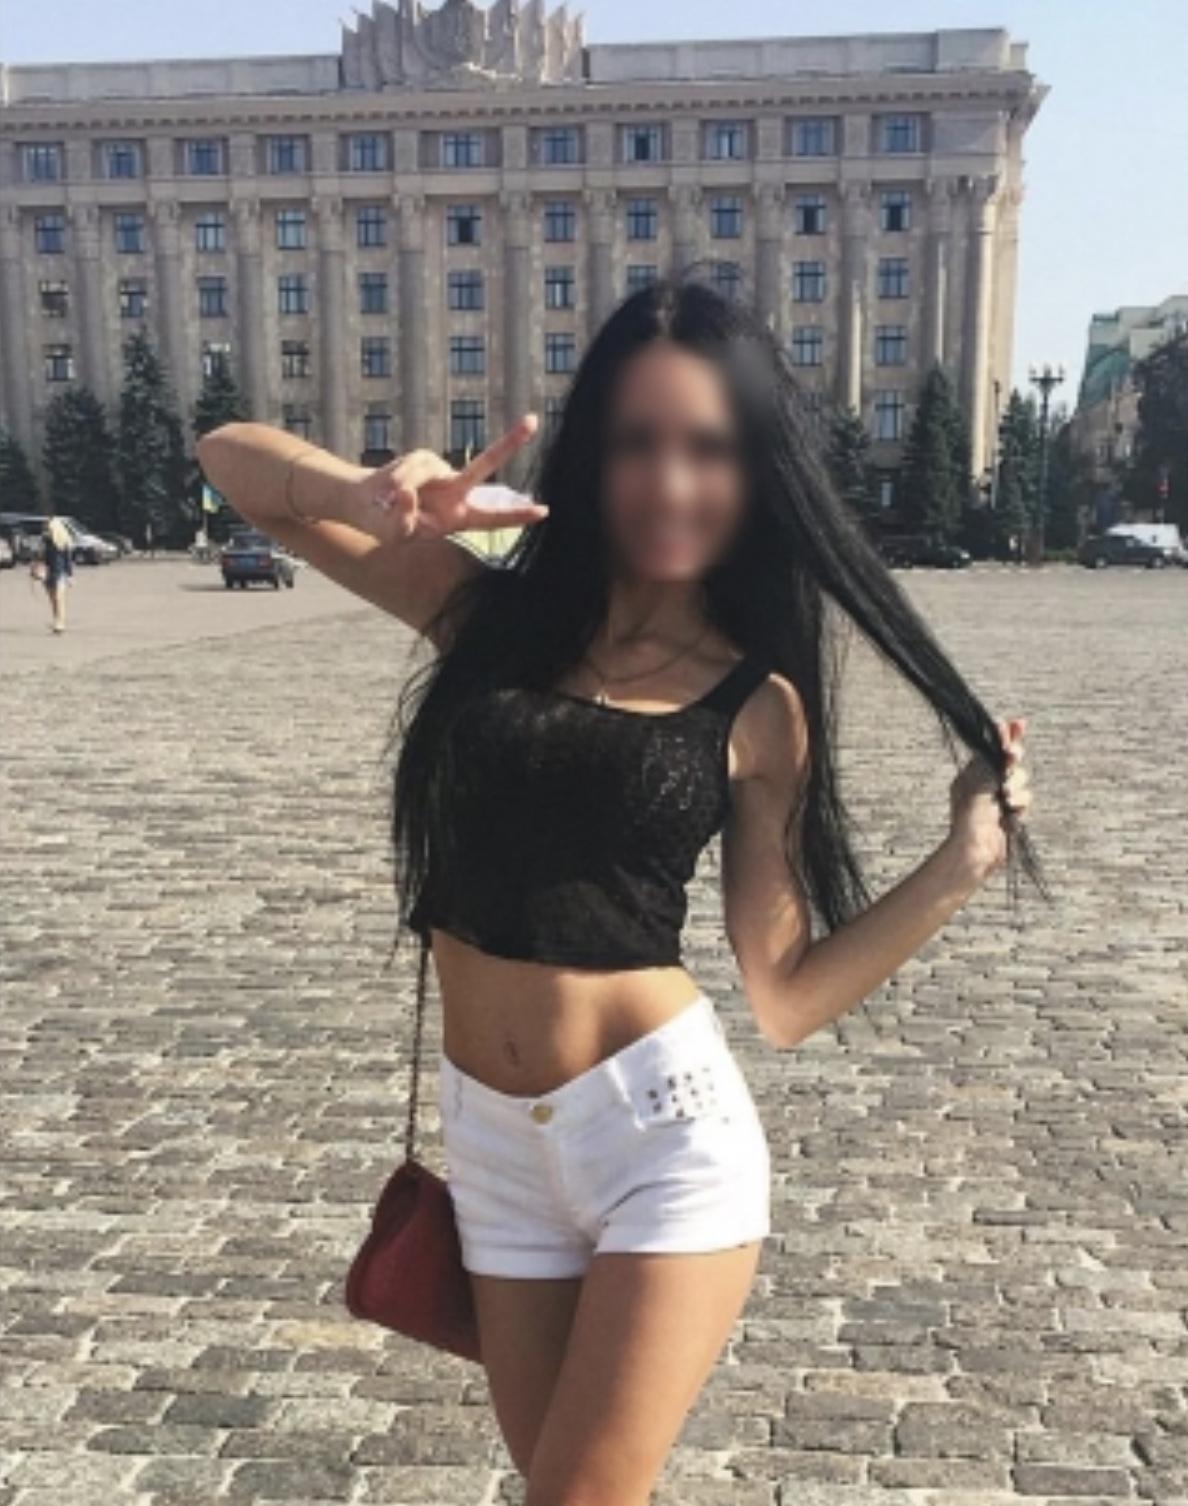 Проститутка Mashenka, фото 1, тел: 0668273342. City Center - Киев